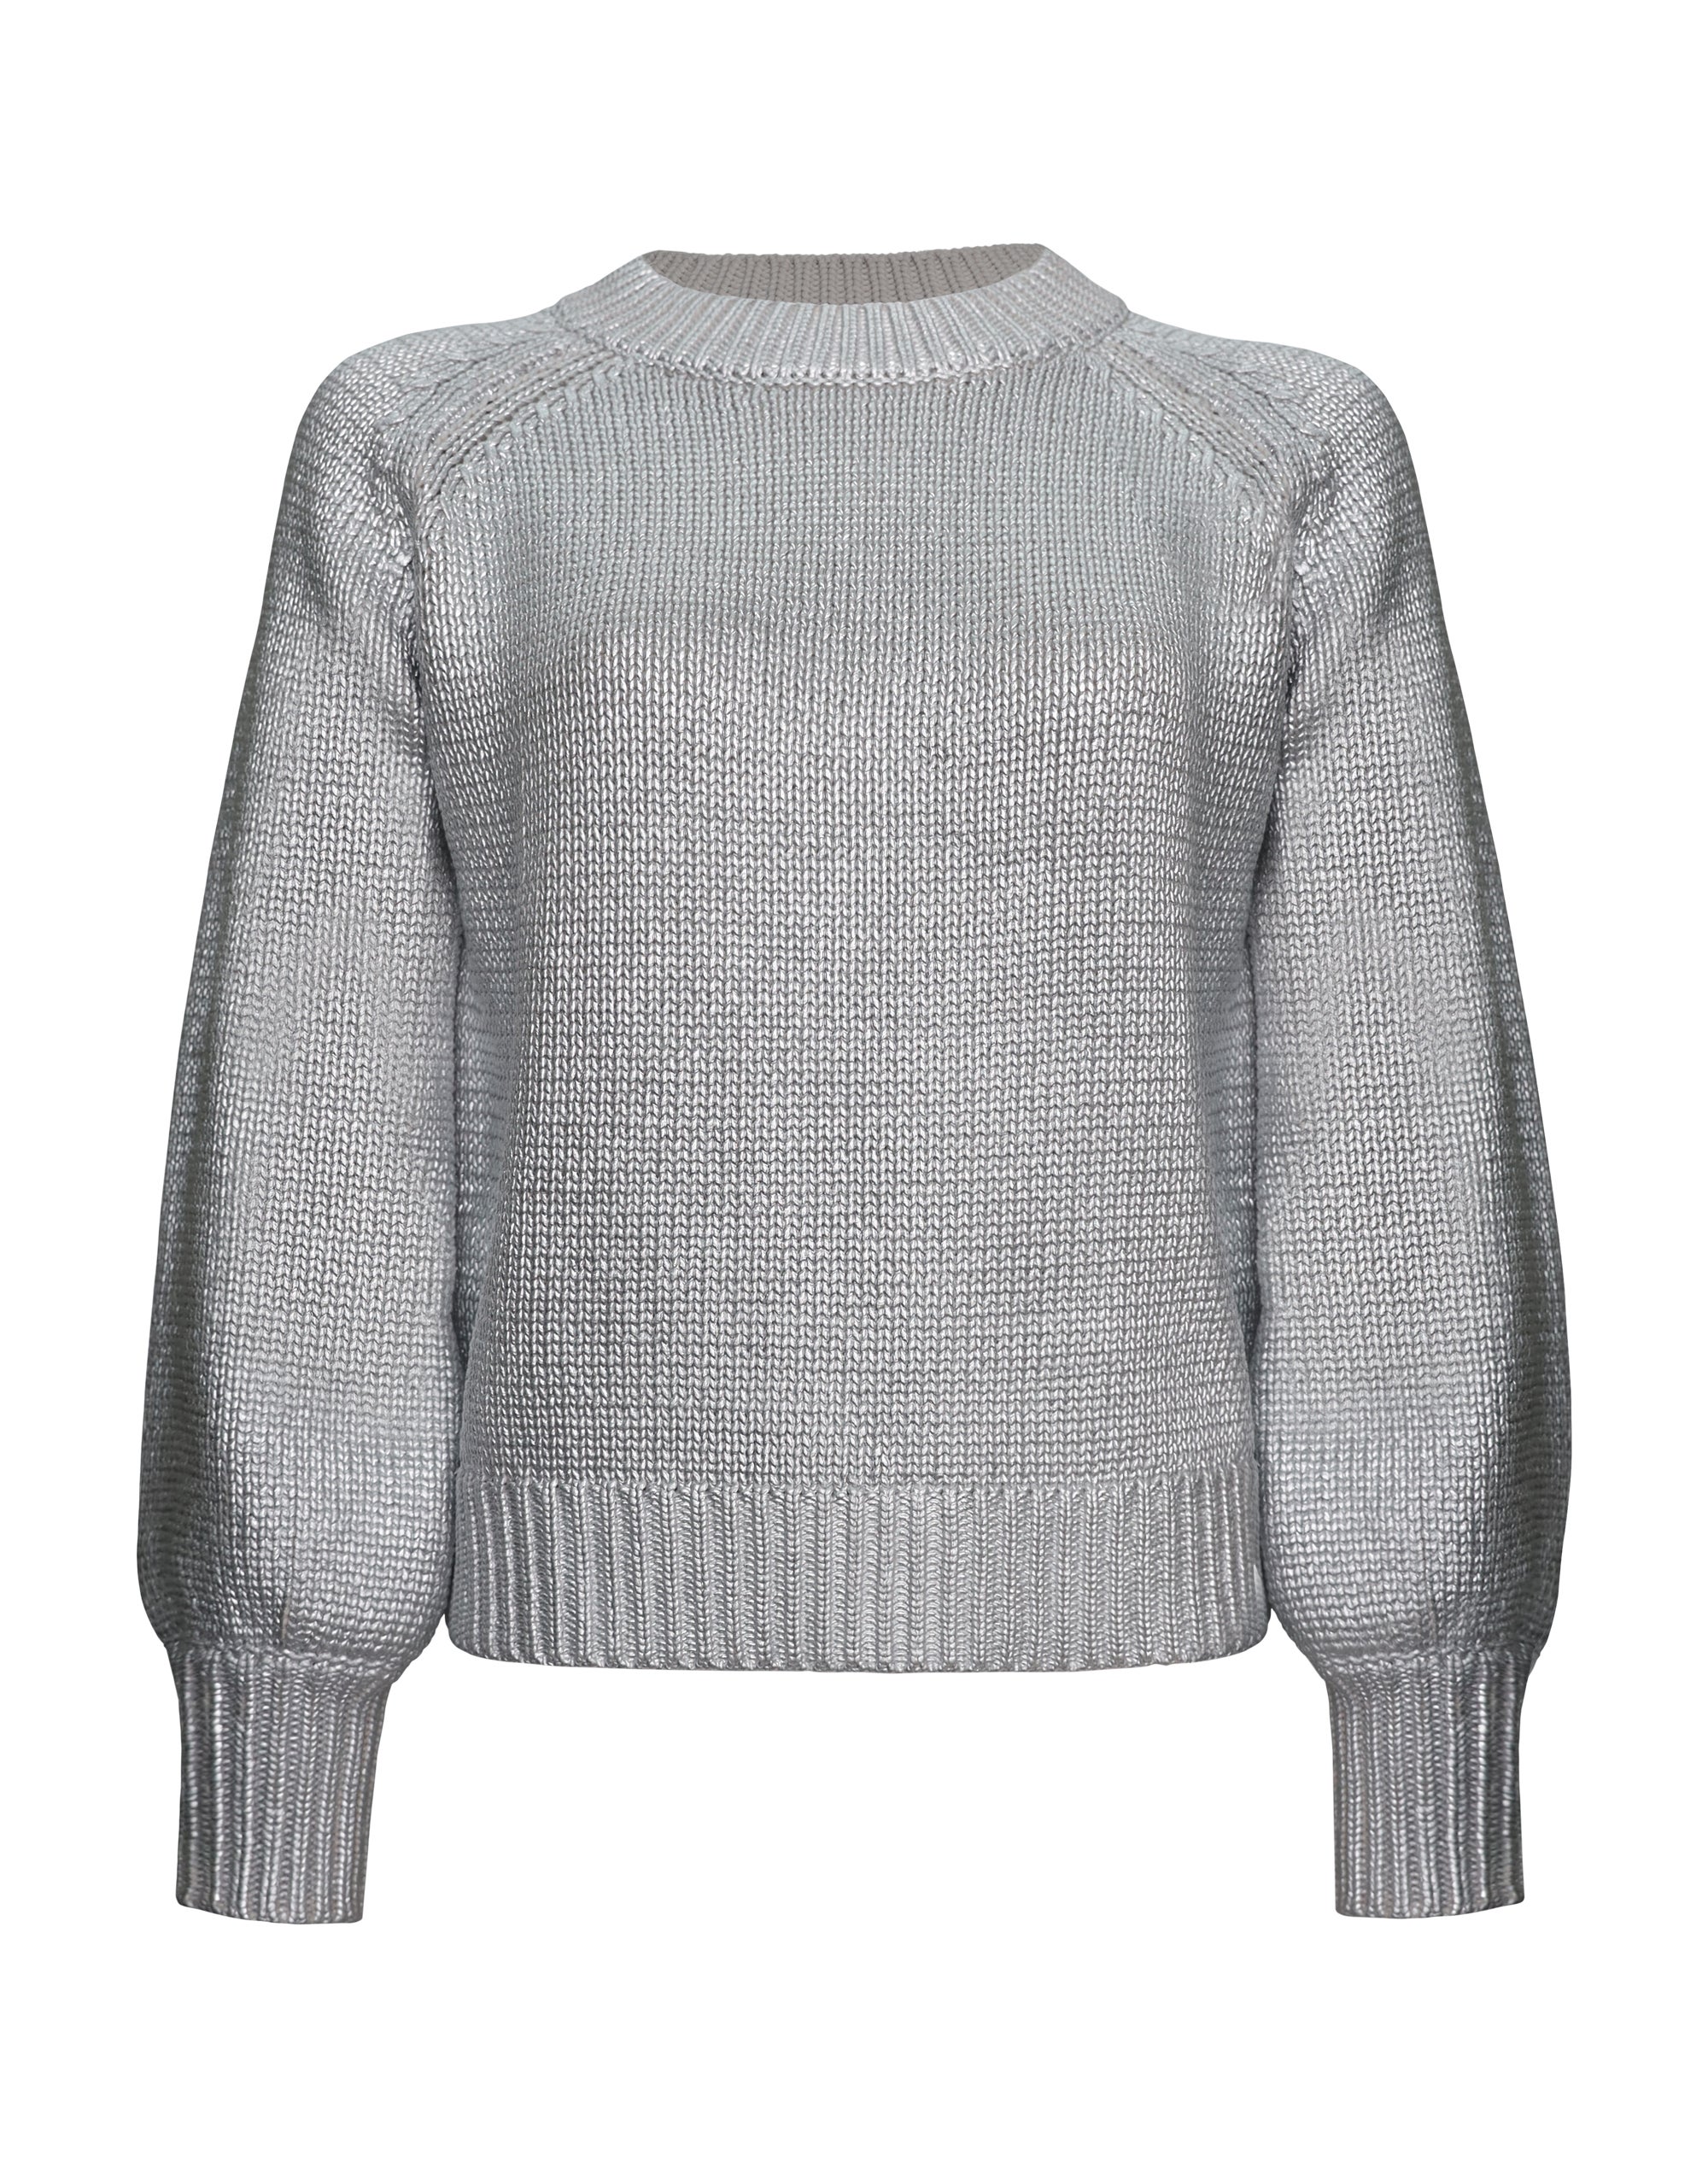 Silver Metallic Rib Sweater - Silver - Knitwear - Long Sleeve - Women's ...